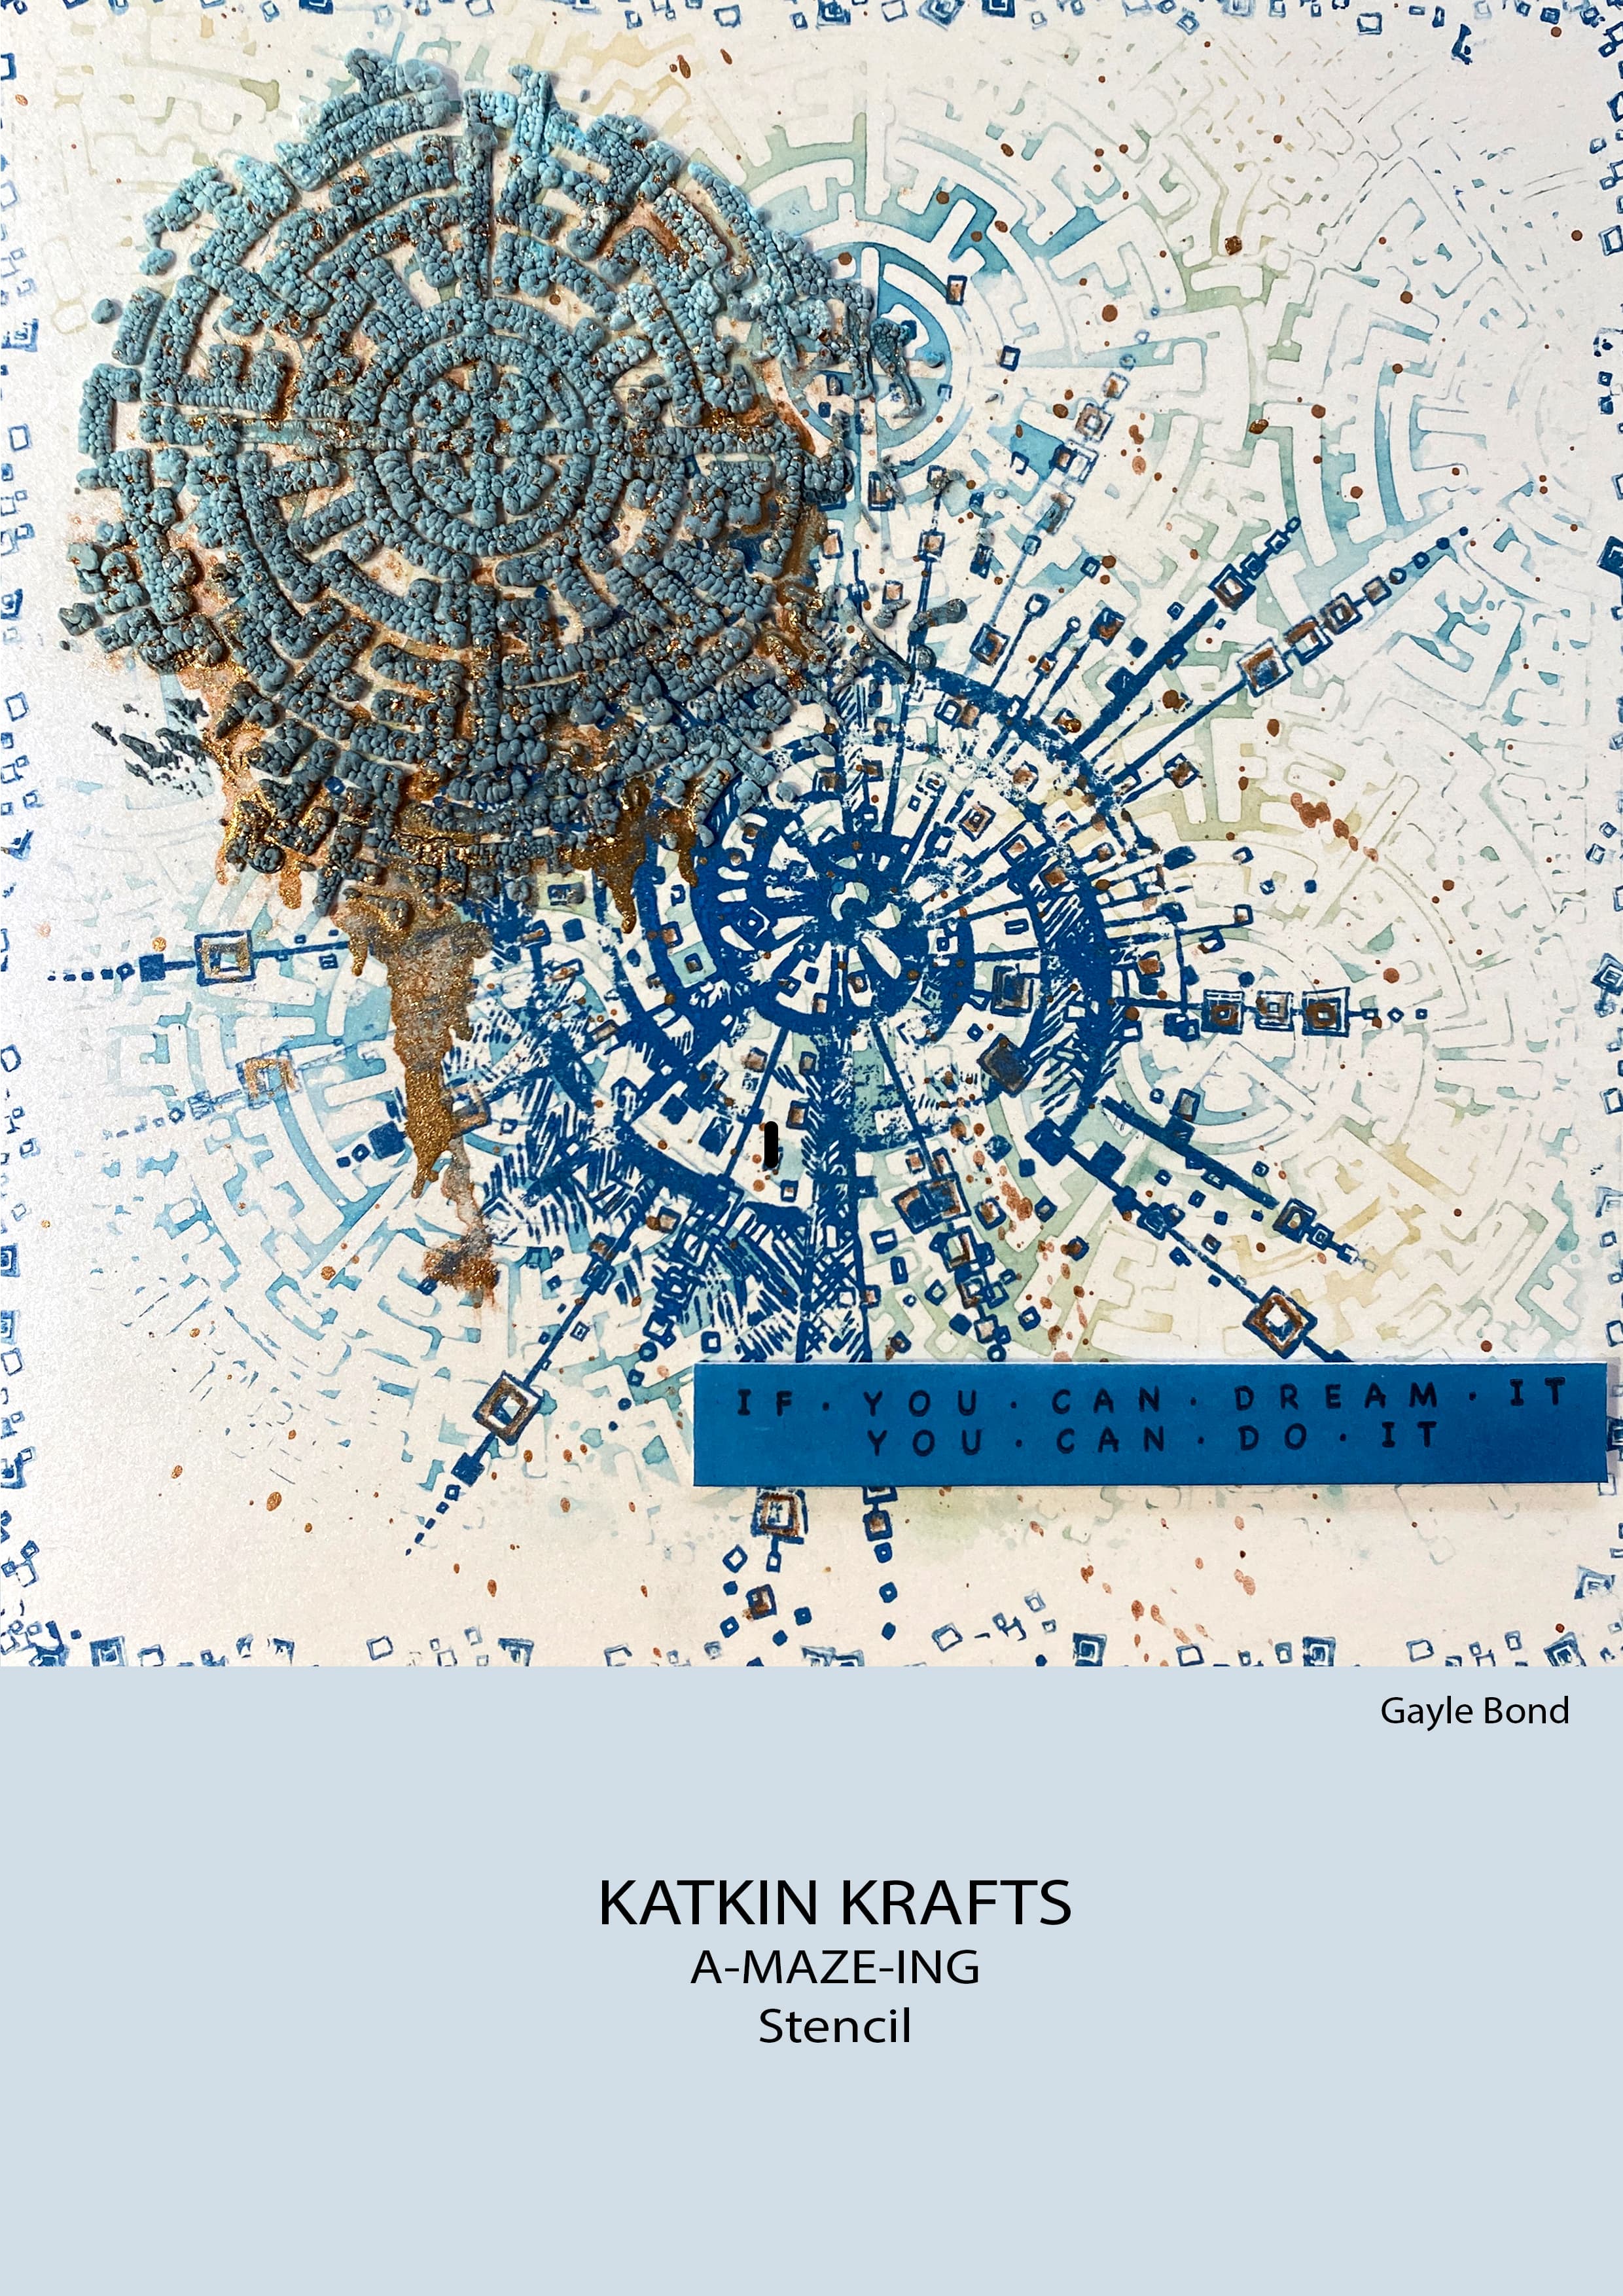 Katkin Krafts A-maze-ing 7 in x 7 in Stencil